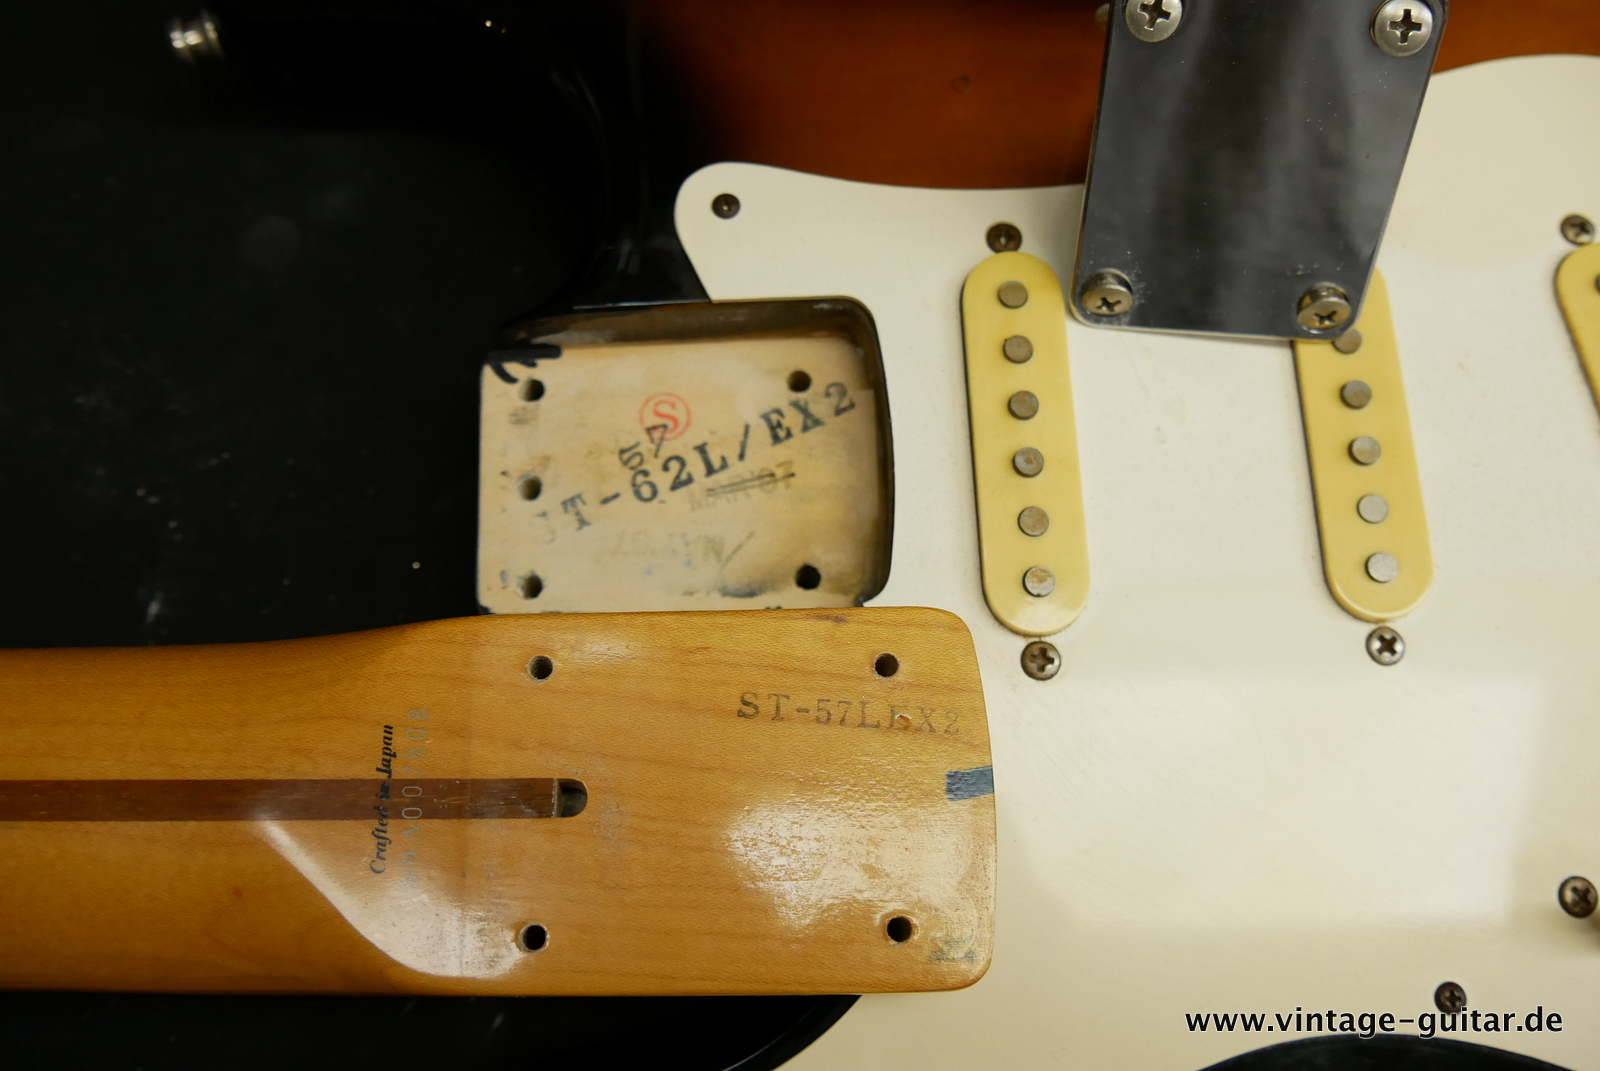 Fender-Stratocaster-CIJ-ST-57-1996-sunburst-016.JPG